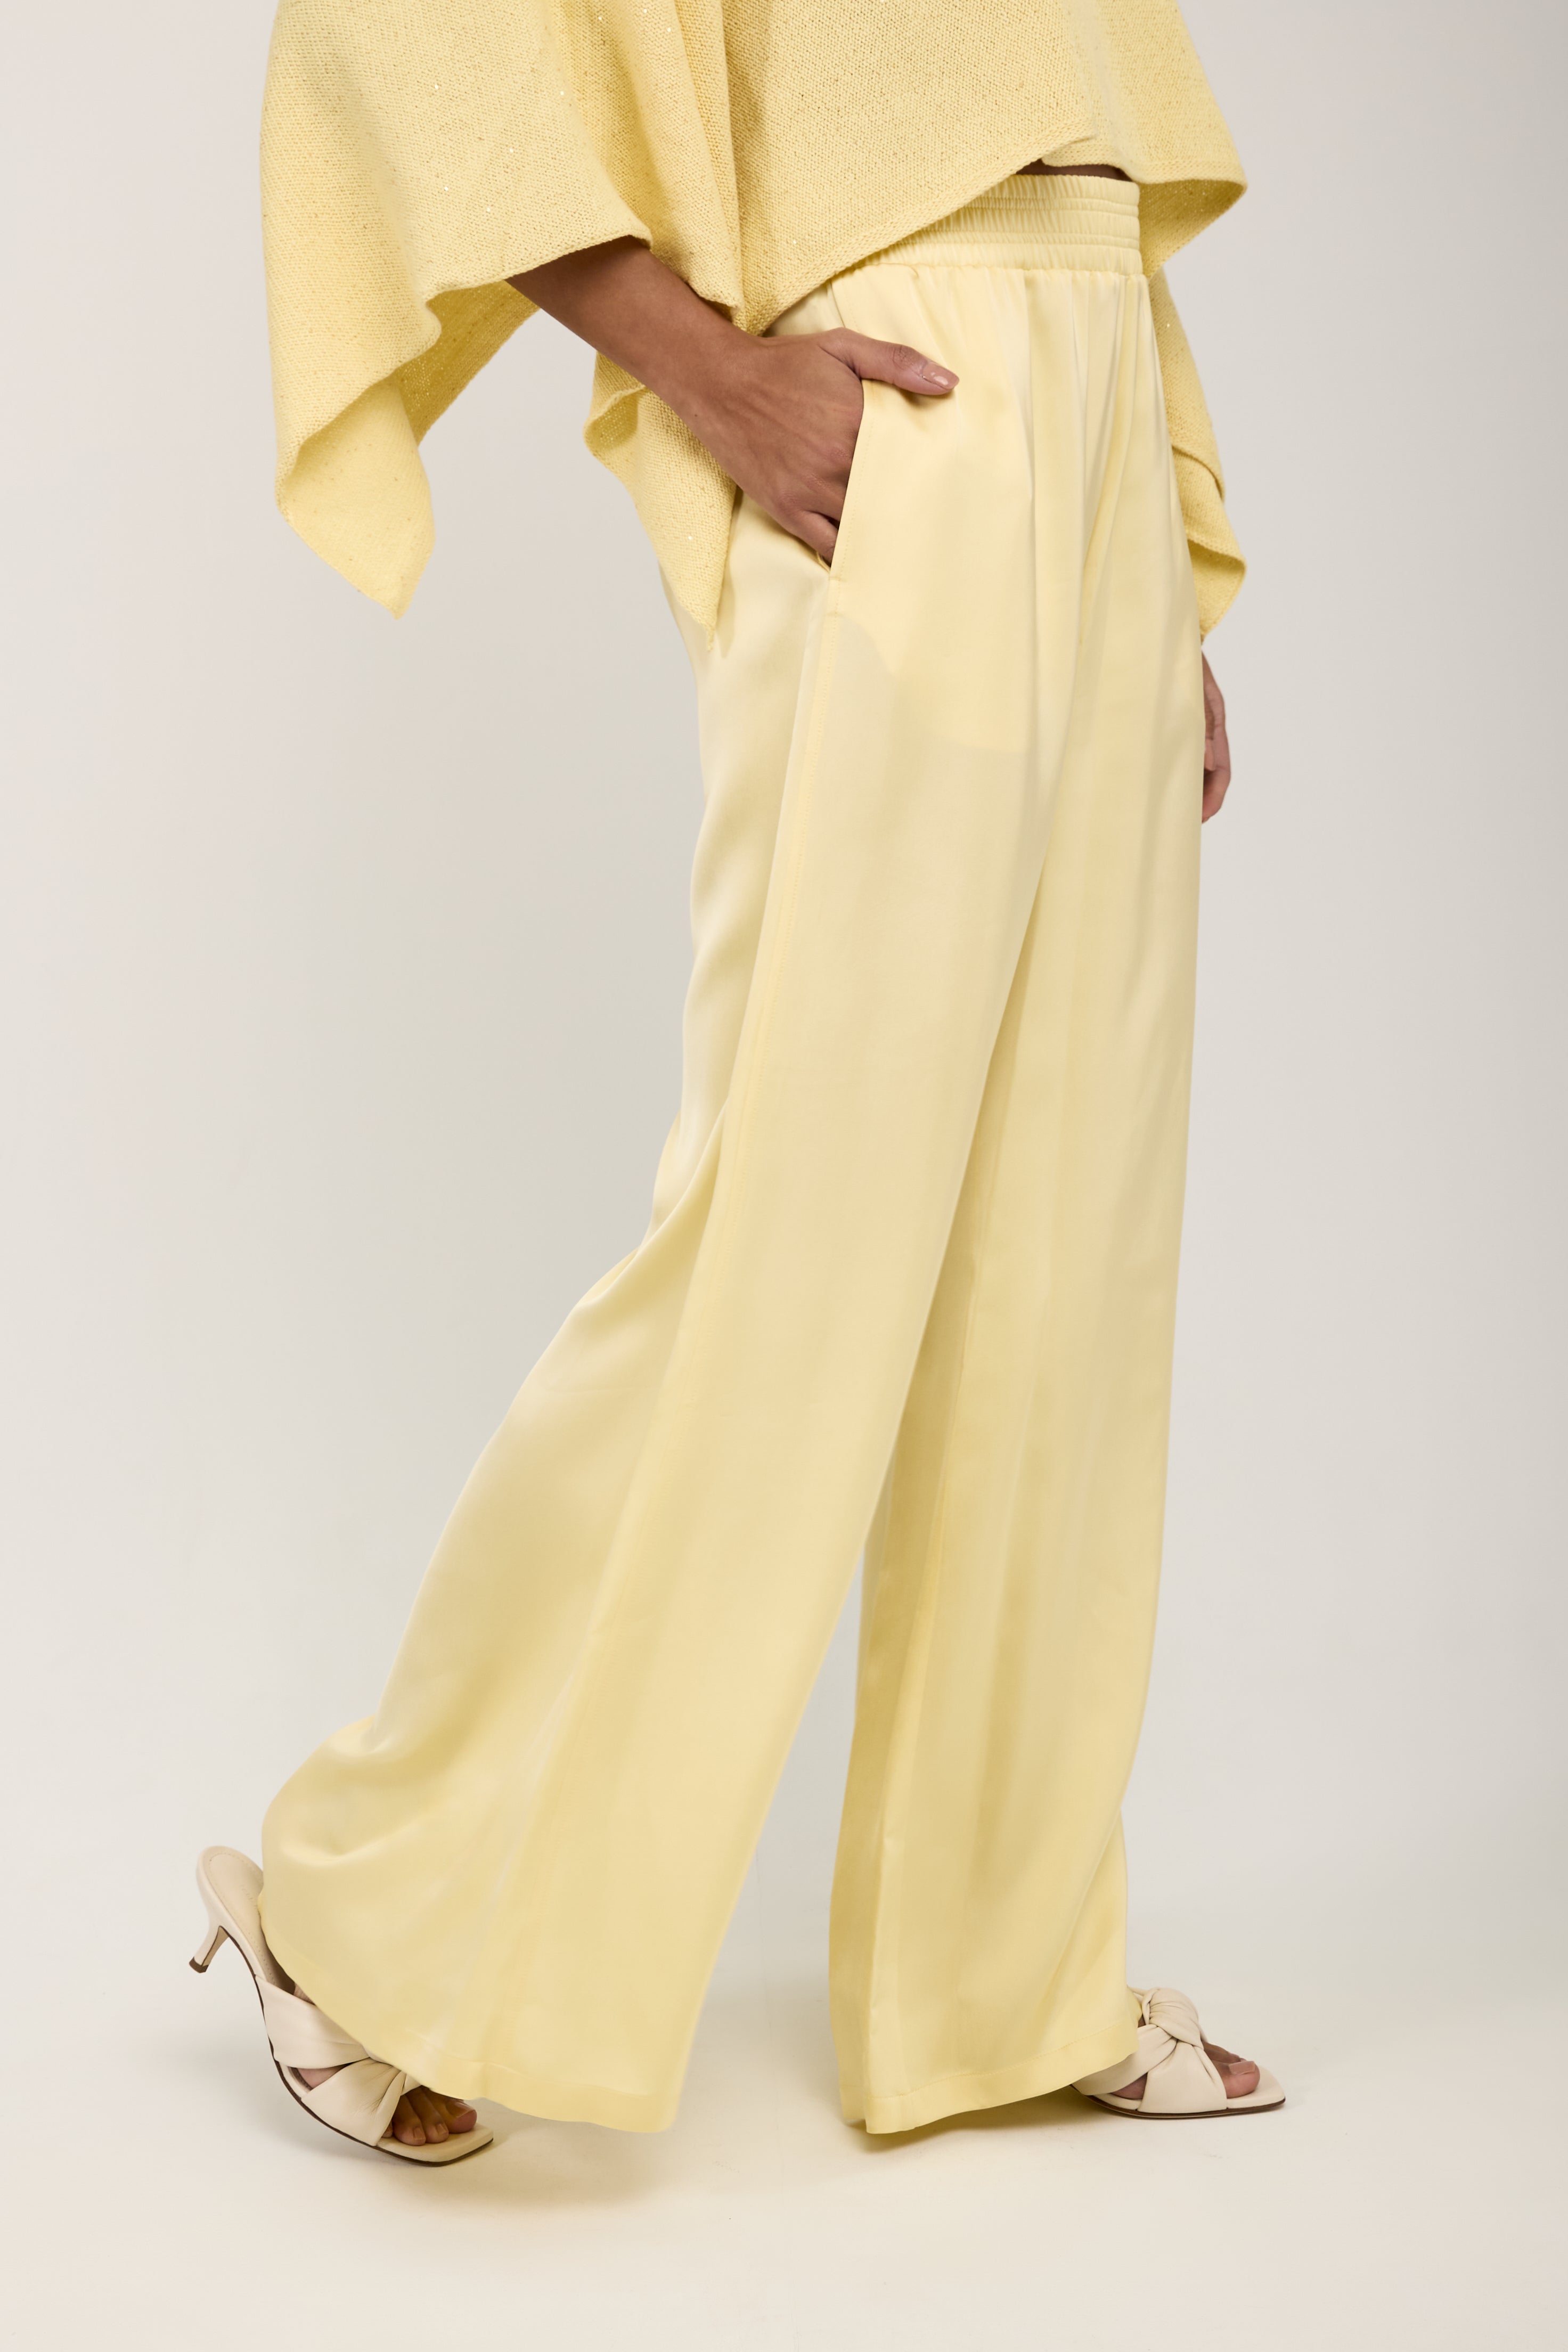 Fabiana Filippi draped satin blouse - Yellow